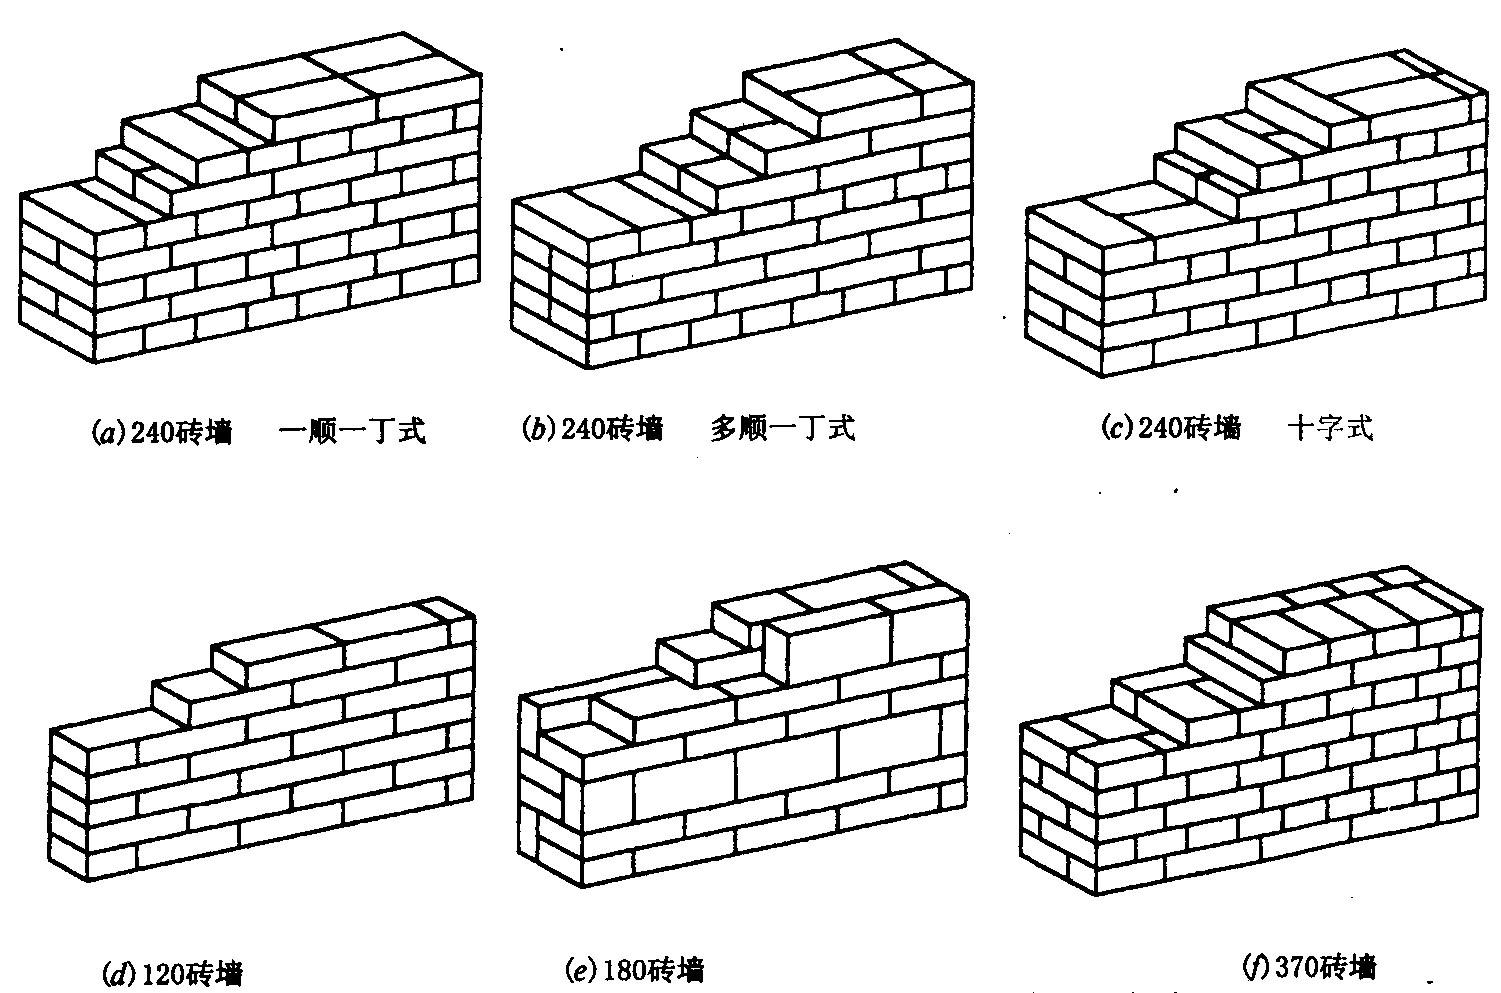 农村建房砌砖有12墙,18墙,24墙,用哪种墙更保暖和隔热?